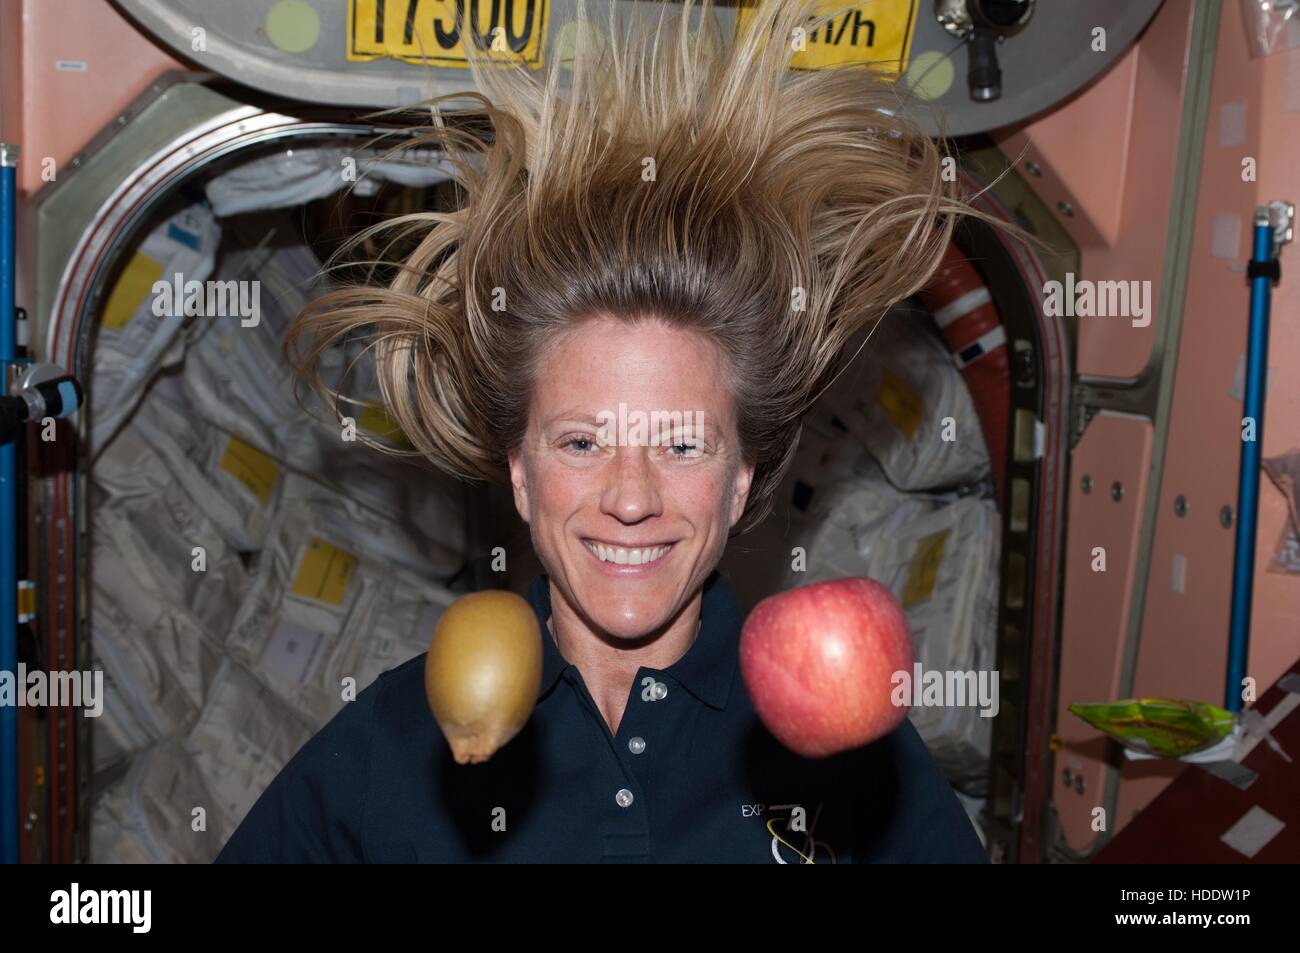 La NASA Stazione Spaziale Internazionale Expedition 36 astronauta Karen Nyberg galleggianti accanto a frutto in assenza di gravità nel nodo 1 modulo Agosto 13, 2013 in orbita intorno alla terra. Foto Stock